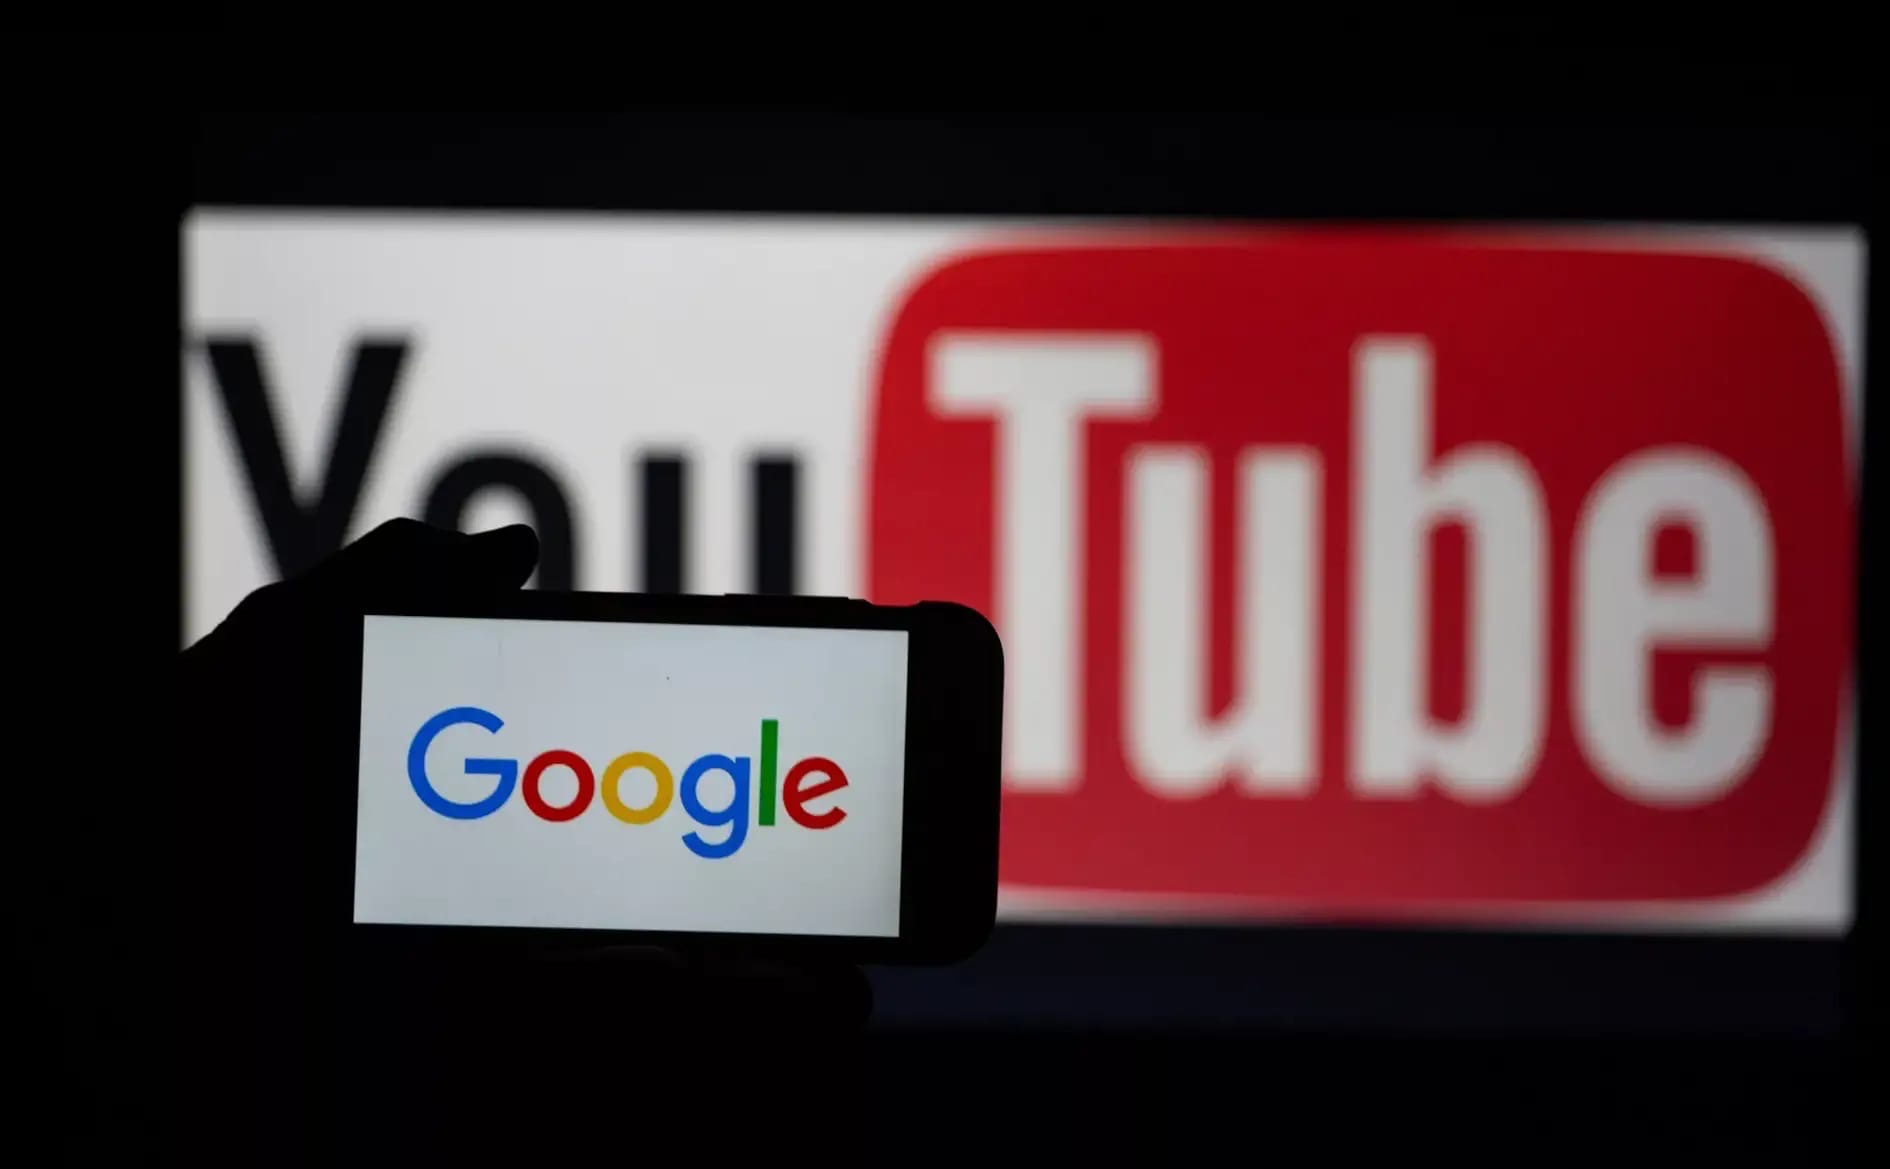 По сообщению Reuters - Google приостановил в России продажу контекстной рекламы на своих платформах: на самом поисковике и на видеохостинге YouTube.